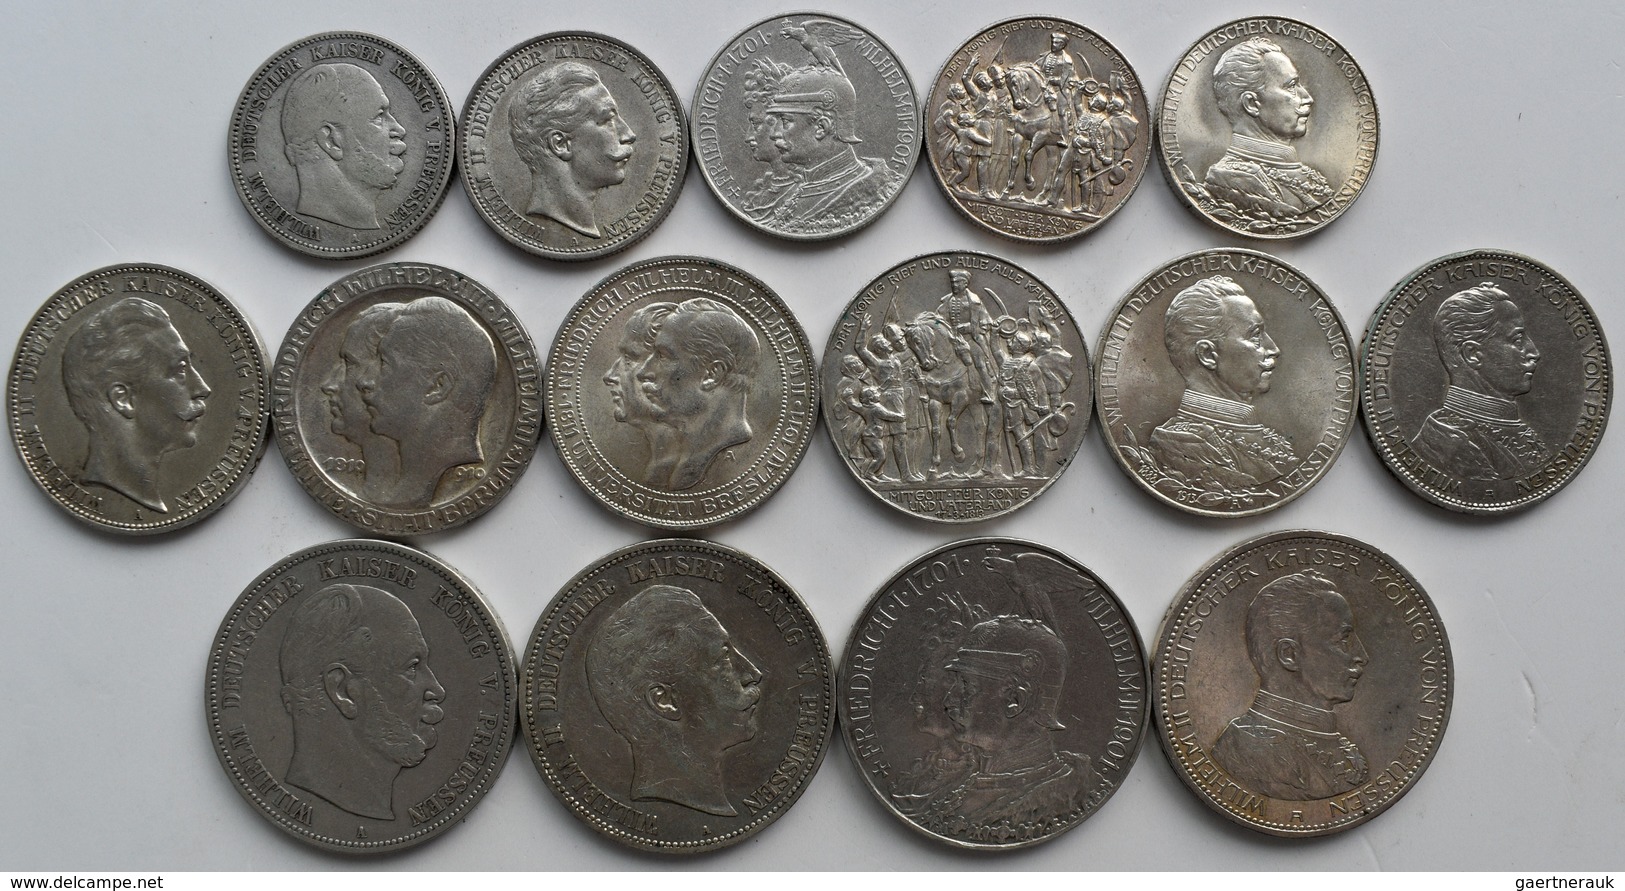 Preußen: Lot 15 Münzen, Dabei 5 X 2 Mark, 6 X 3 Mark Und 4 X 5 Mark Aus Preußen, Jede Münze Anders. - Taler Et Doppeltaler